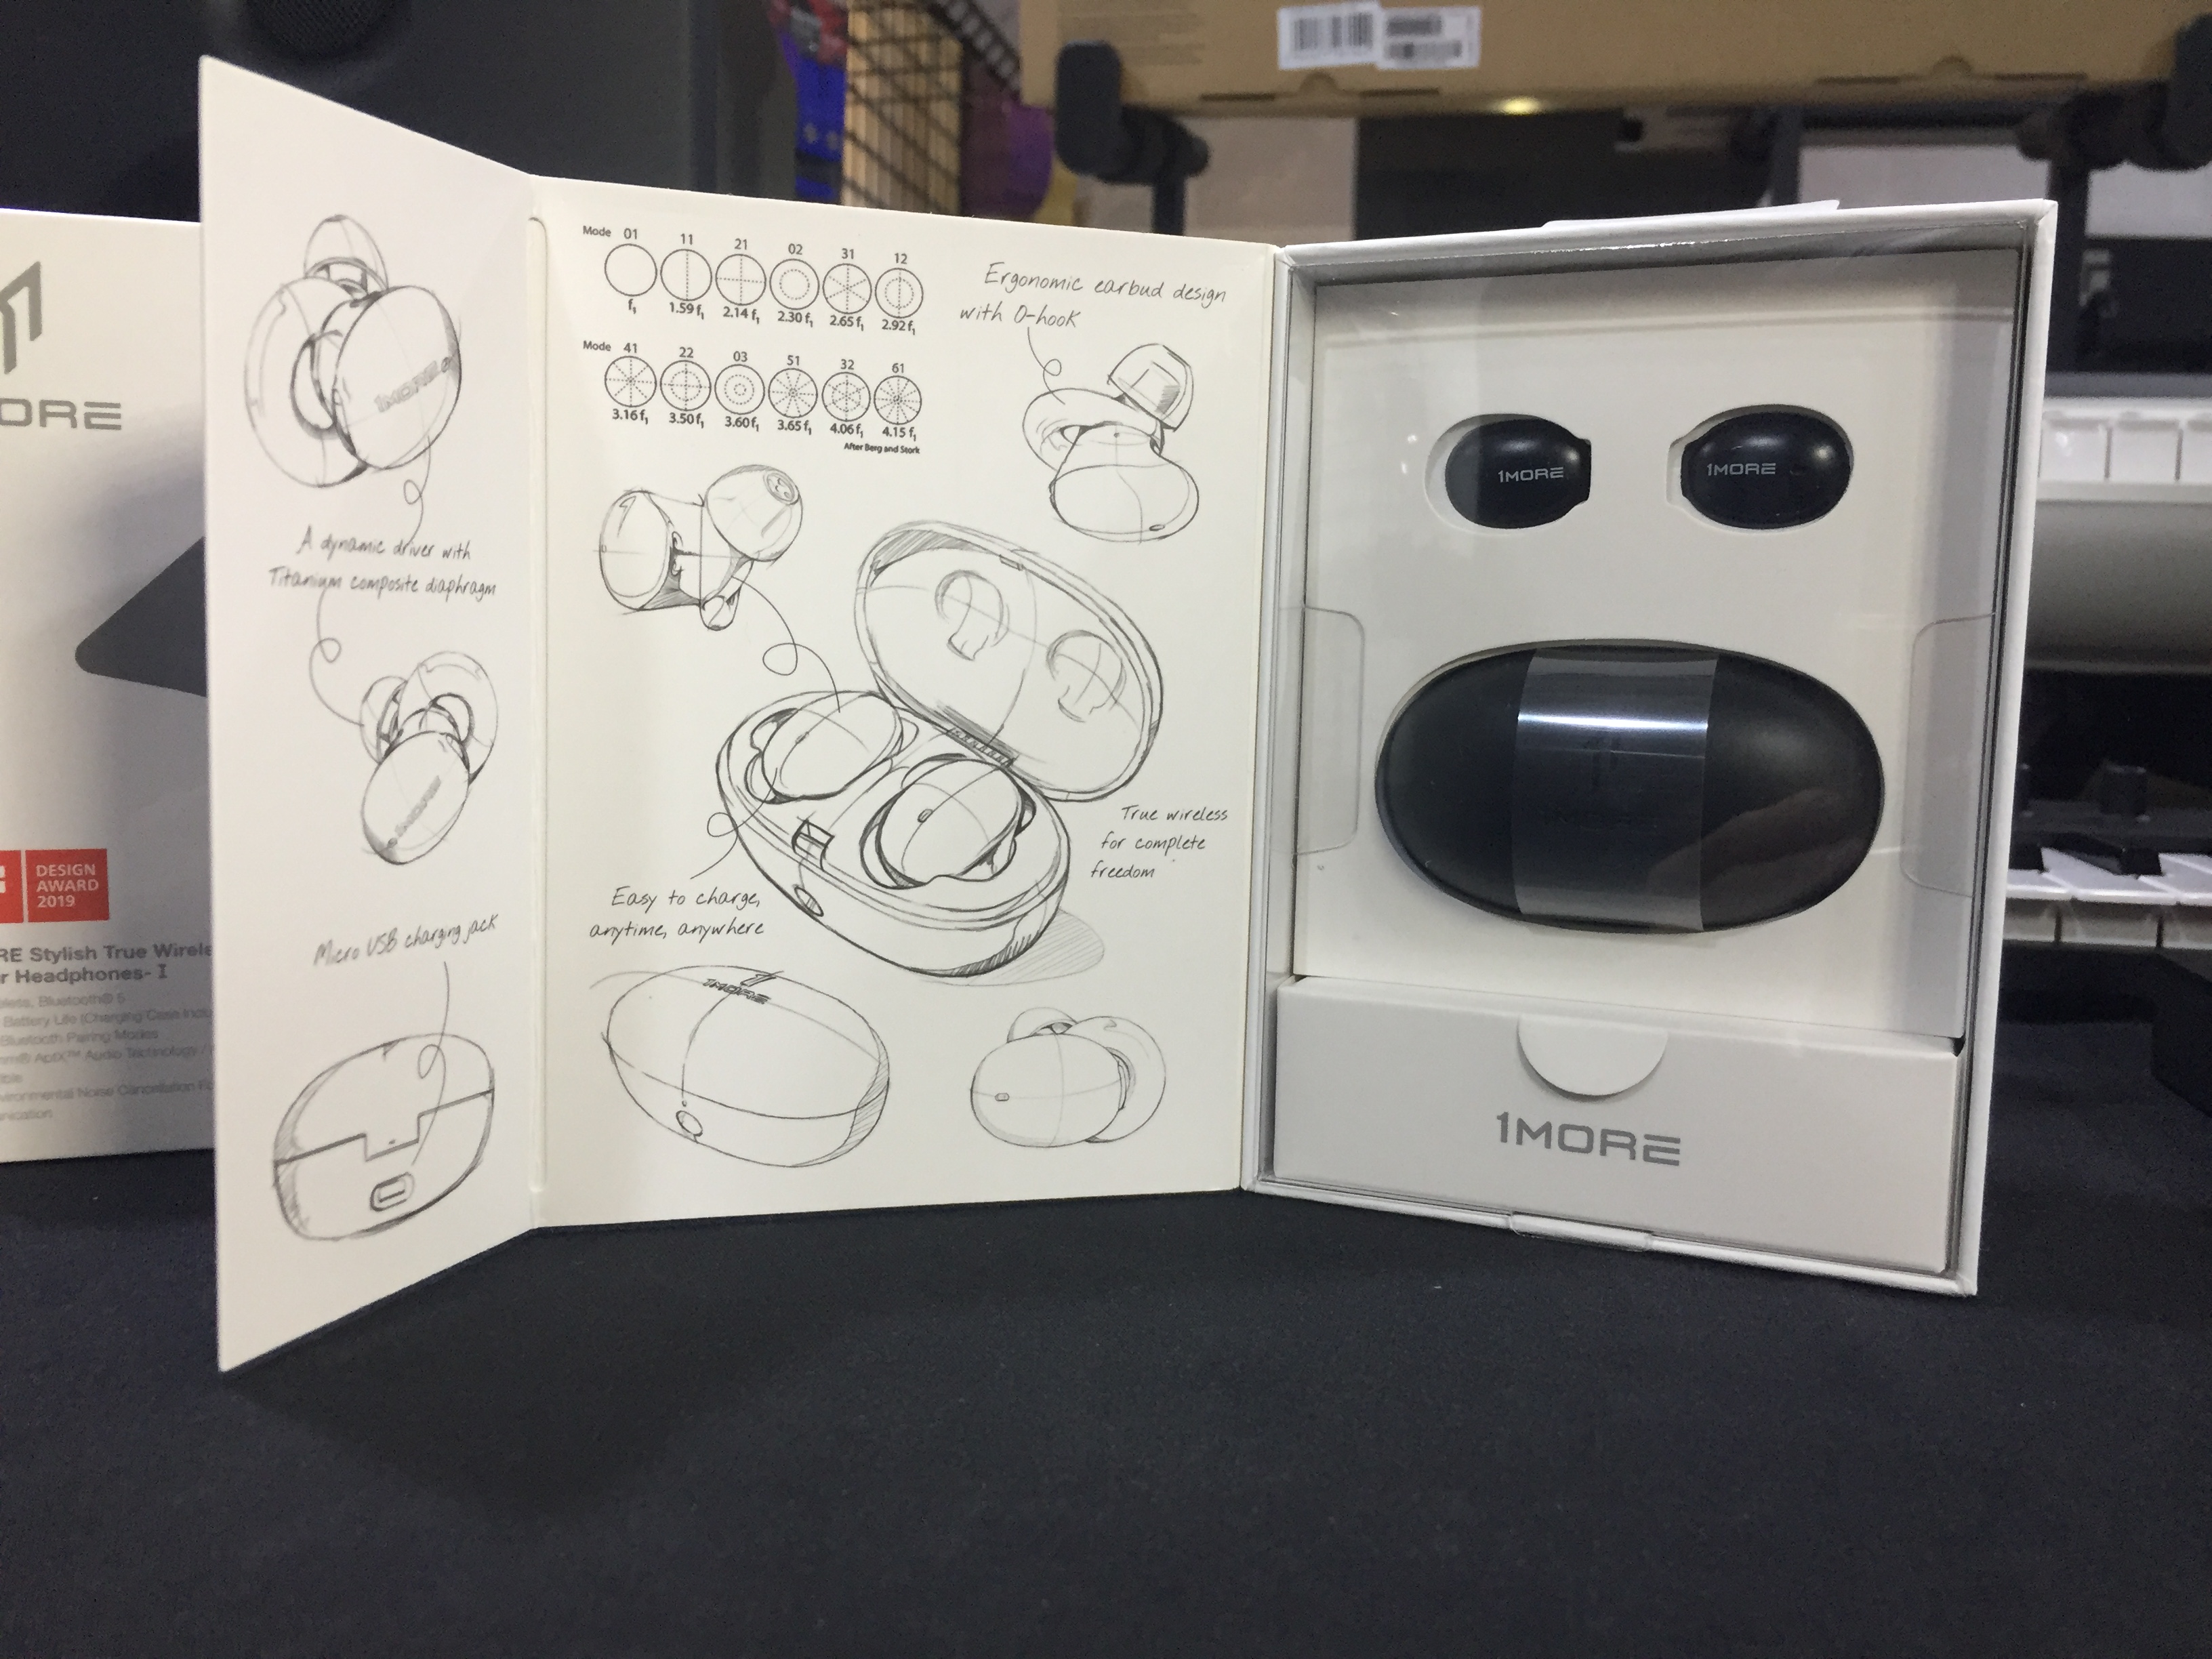 手绘风耳机设计图,可以看到 1more 在外盒包装上的用心.